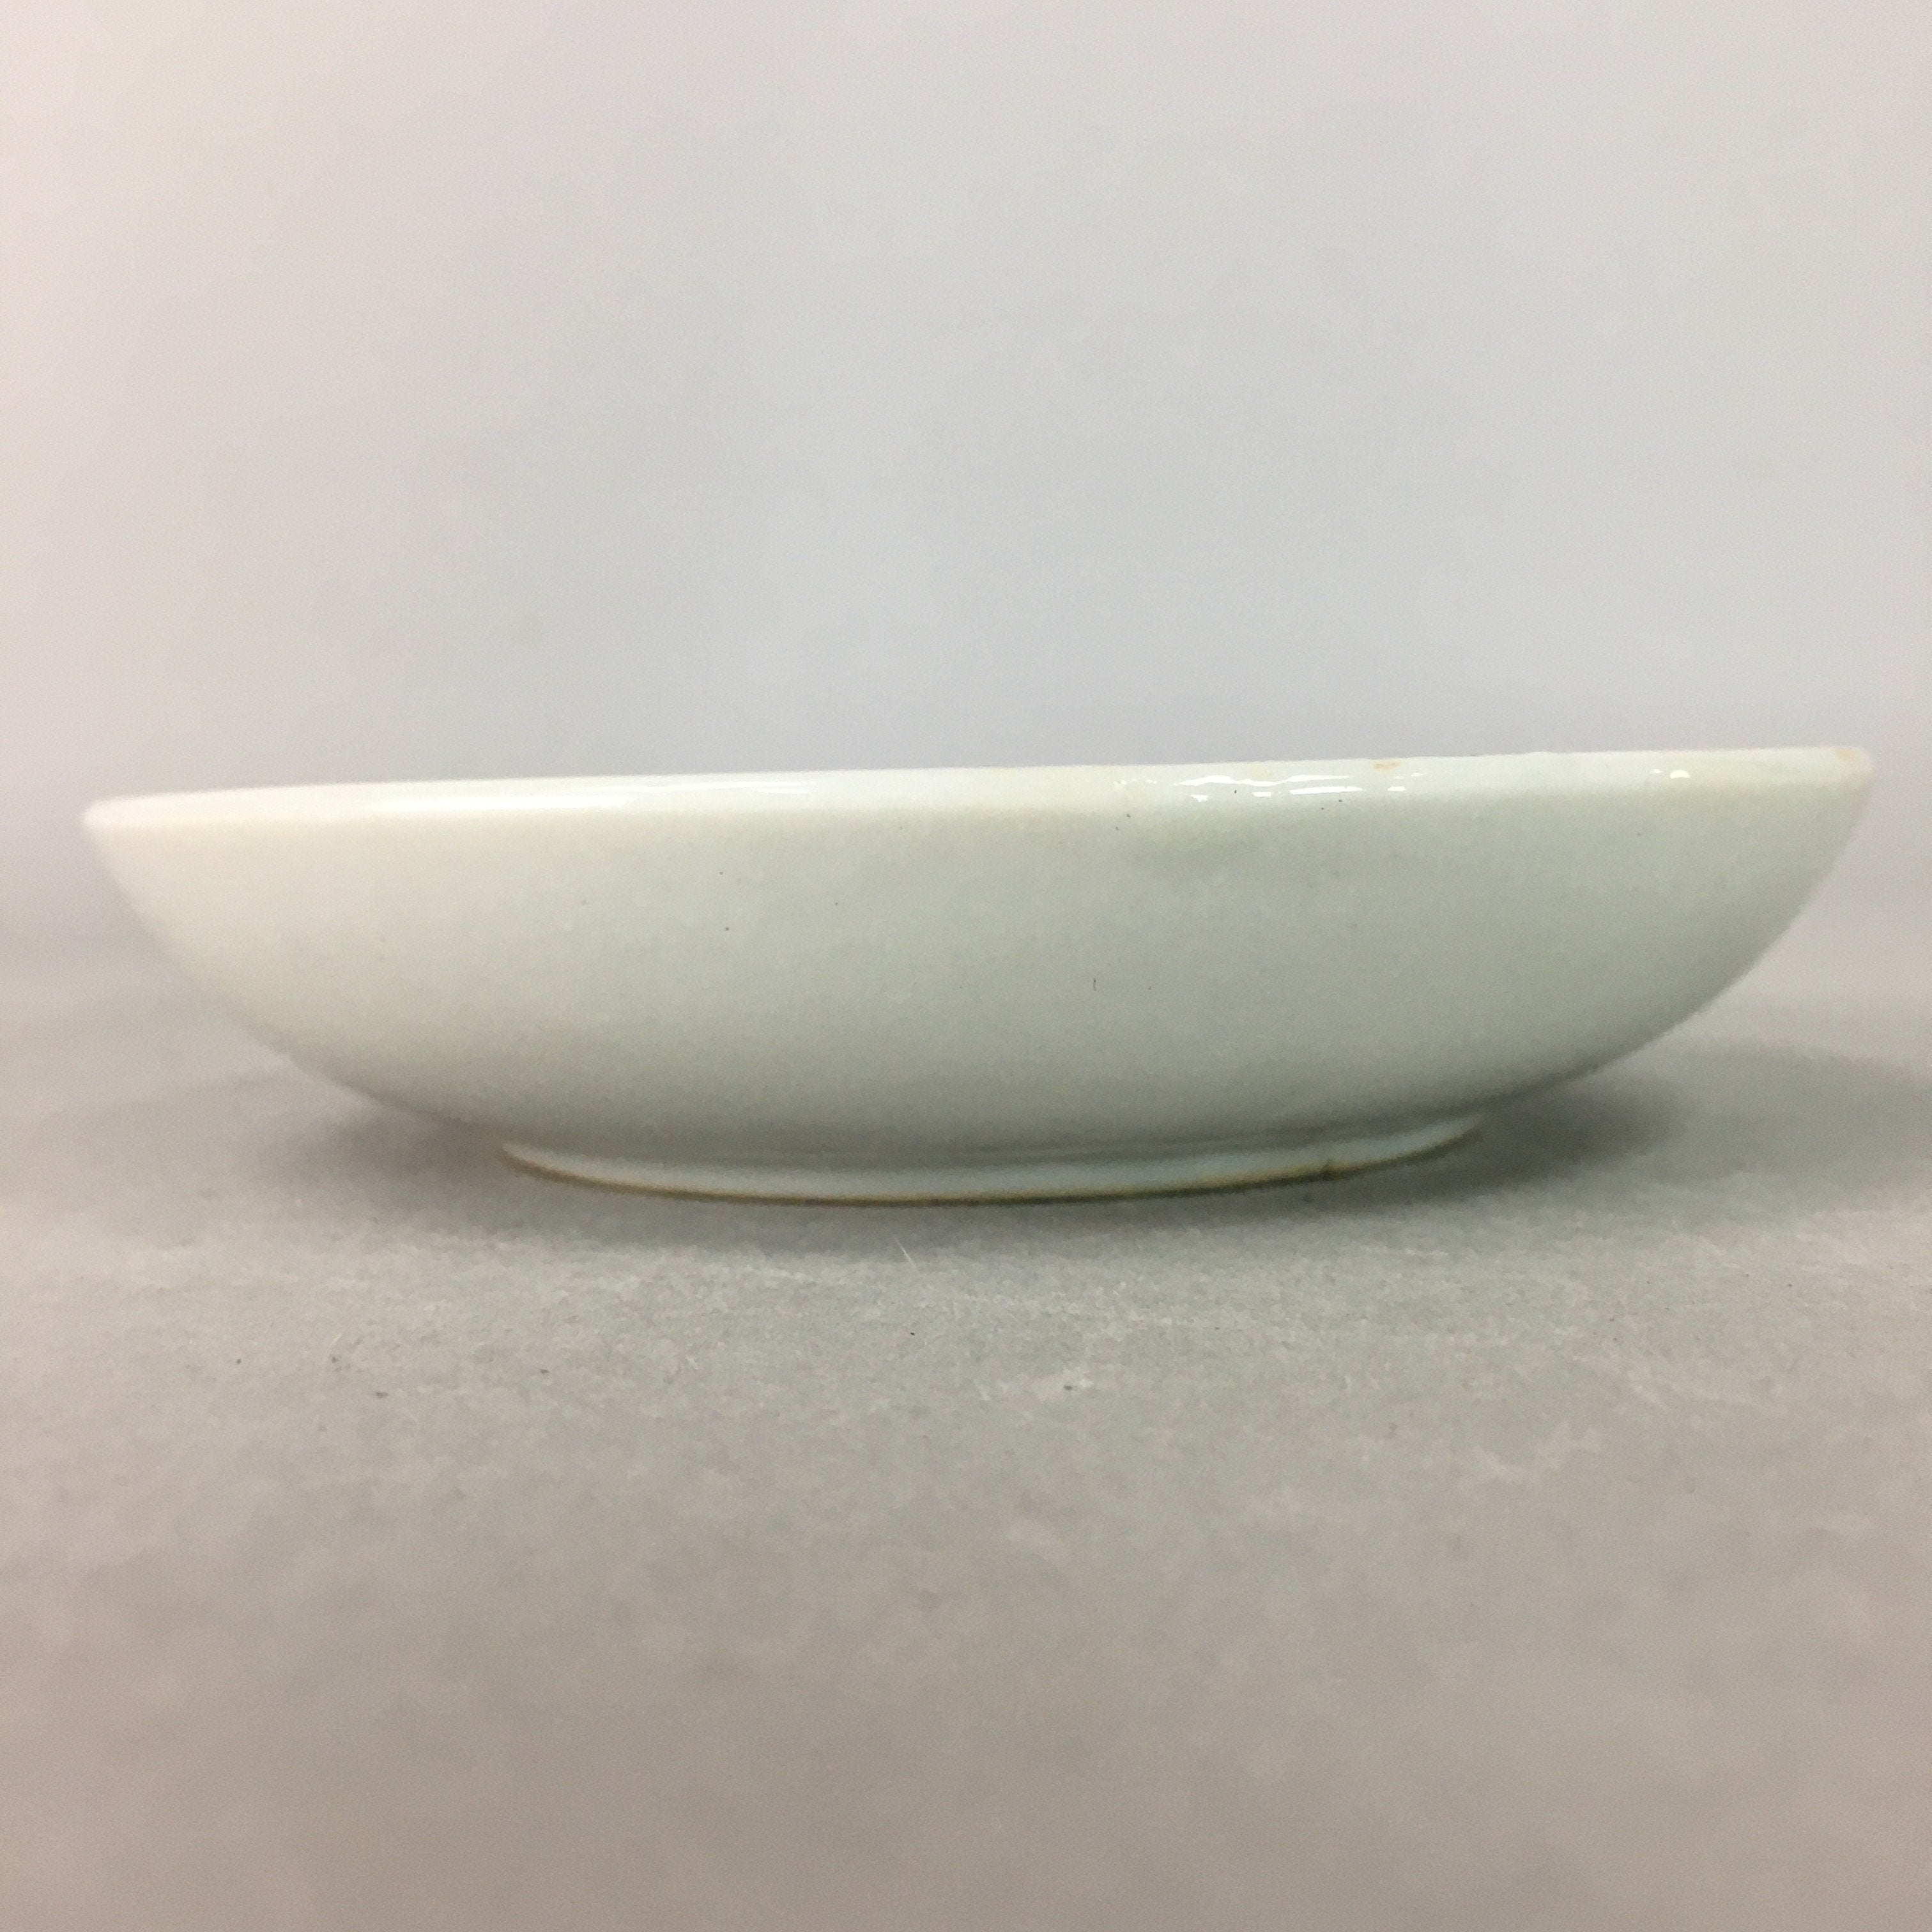 Japanese Porcelain Small Plate Vtg Kozara Floral Petal Green White PP109